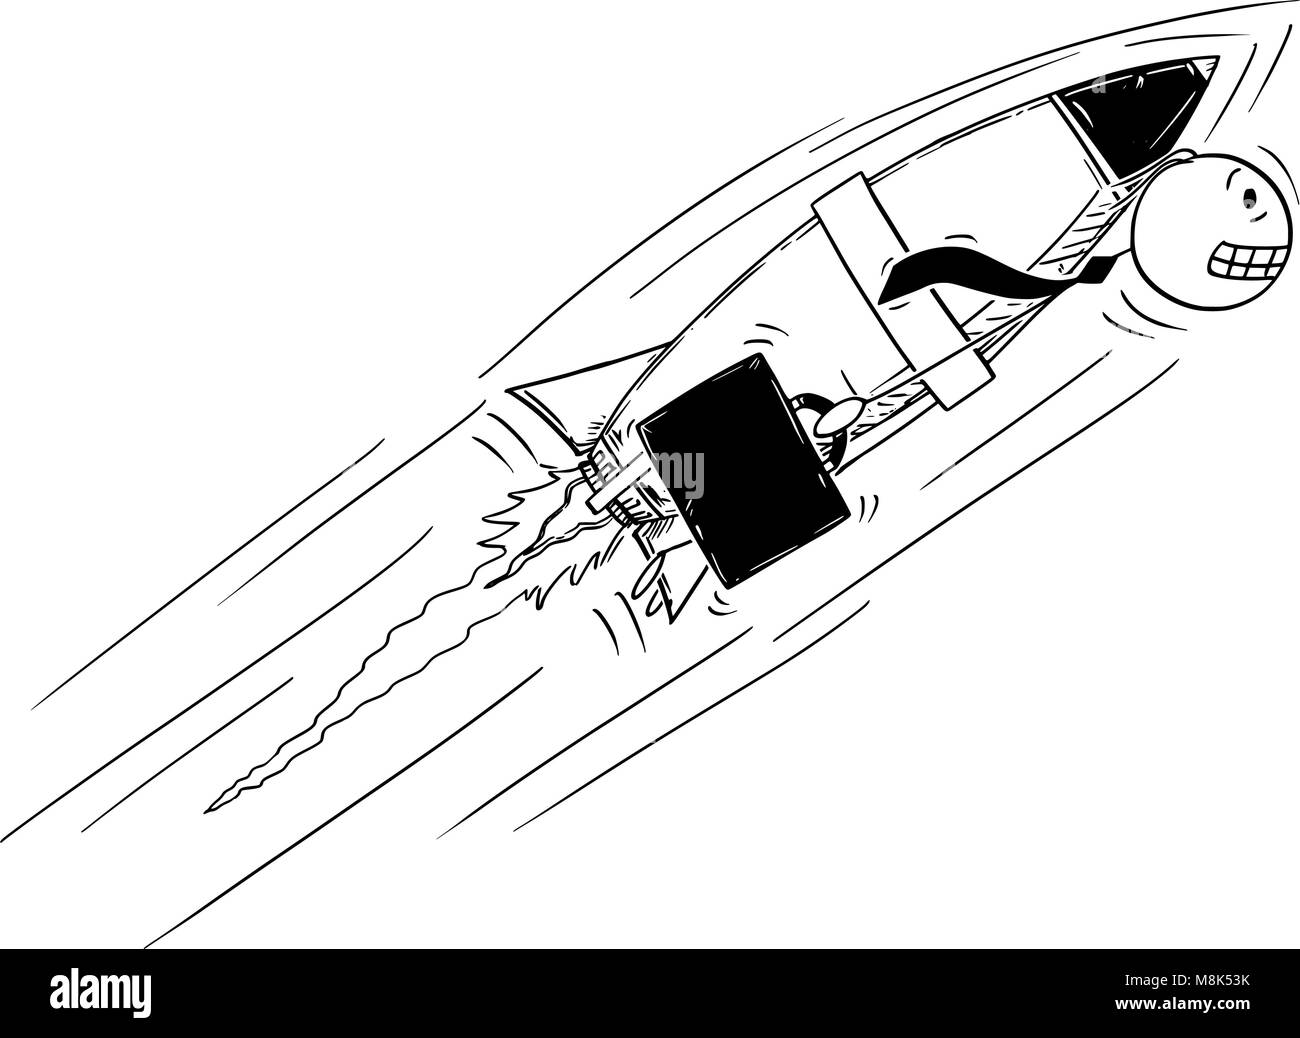 Caricature de l'homme d'affaires de haut vol et rapide avec Rocket sur son dos Illustration de Vecteur